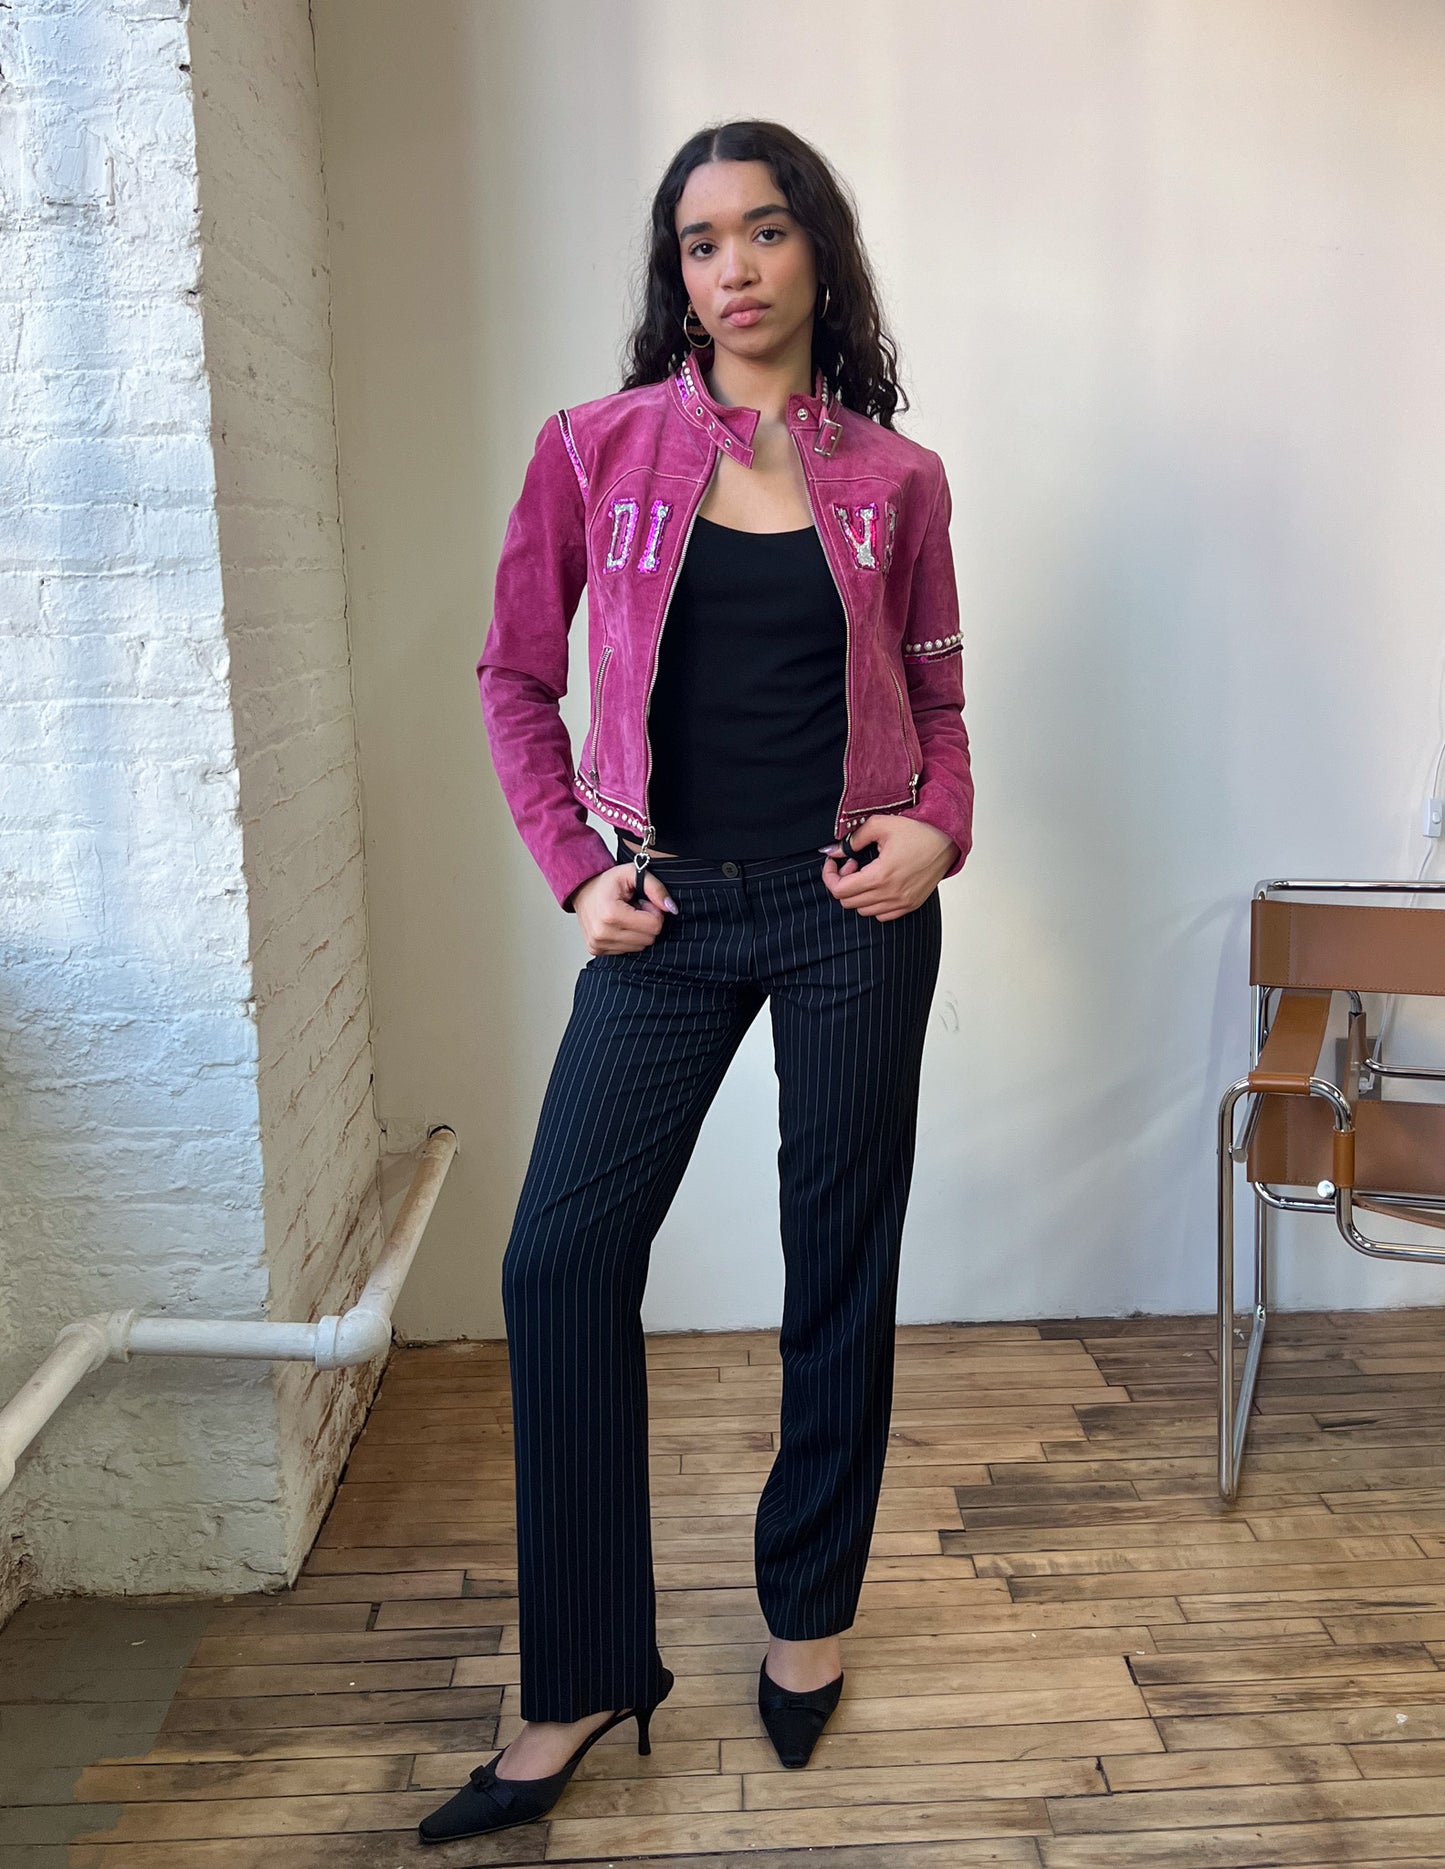 Wilson's Leather Diva Embellished Pink Suede Jacket